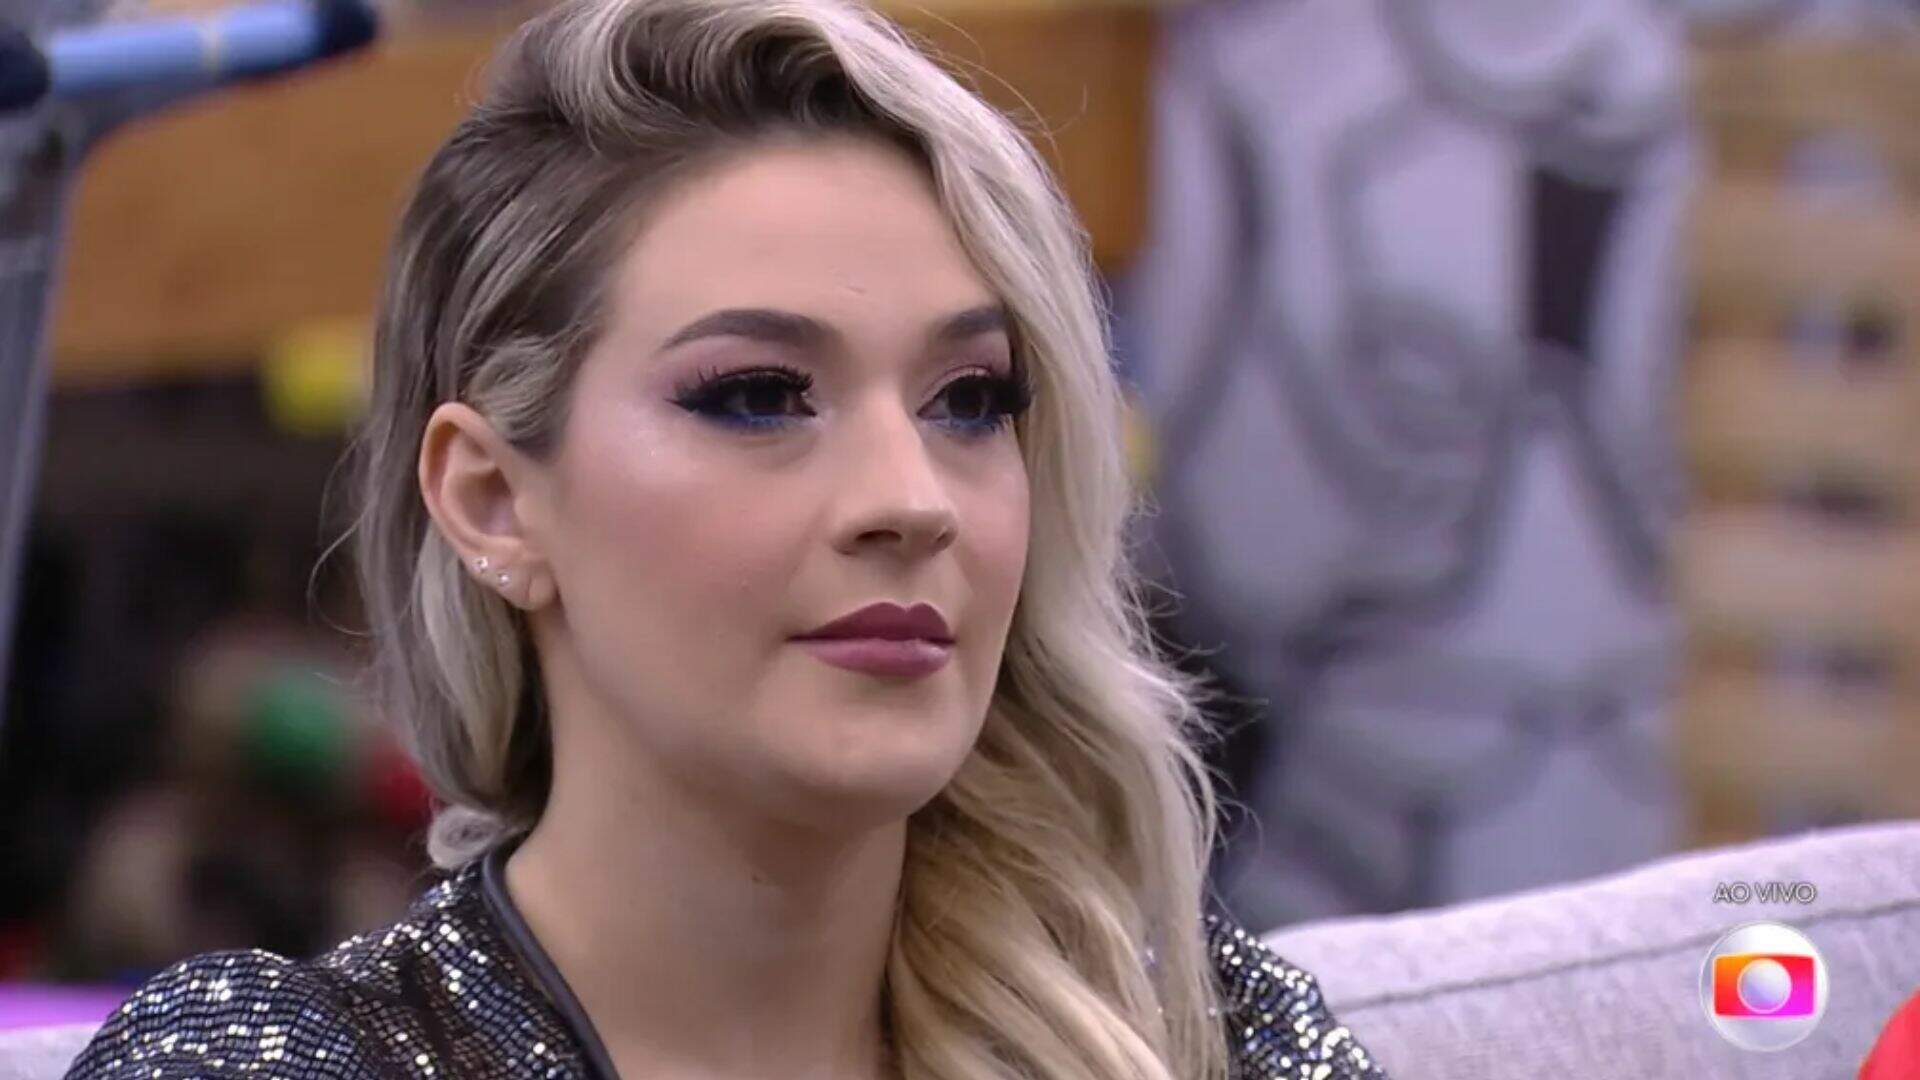 BBB 23: Marília Miranda revela ter mentido no “Jogo da Discórdia” após se sentir rejeitada